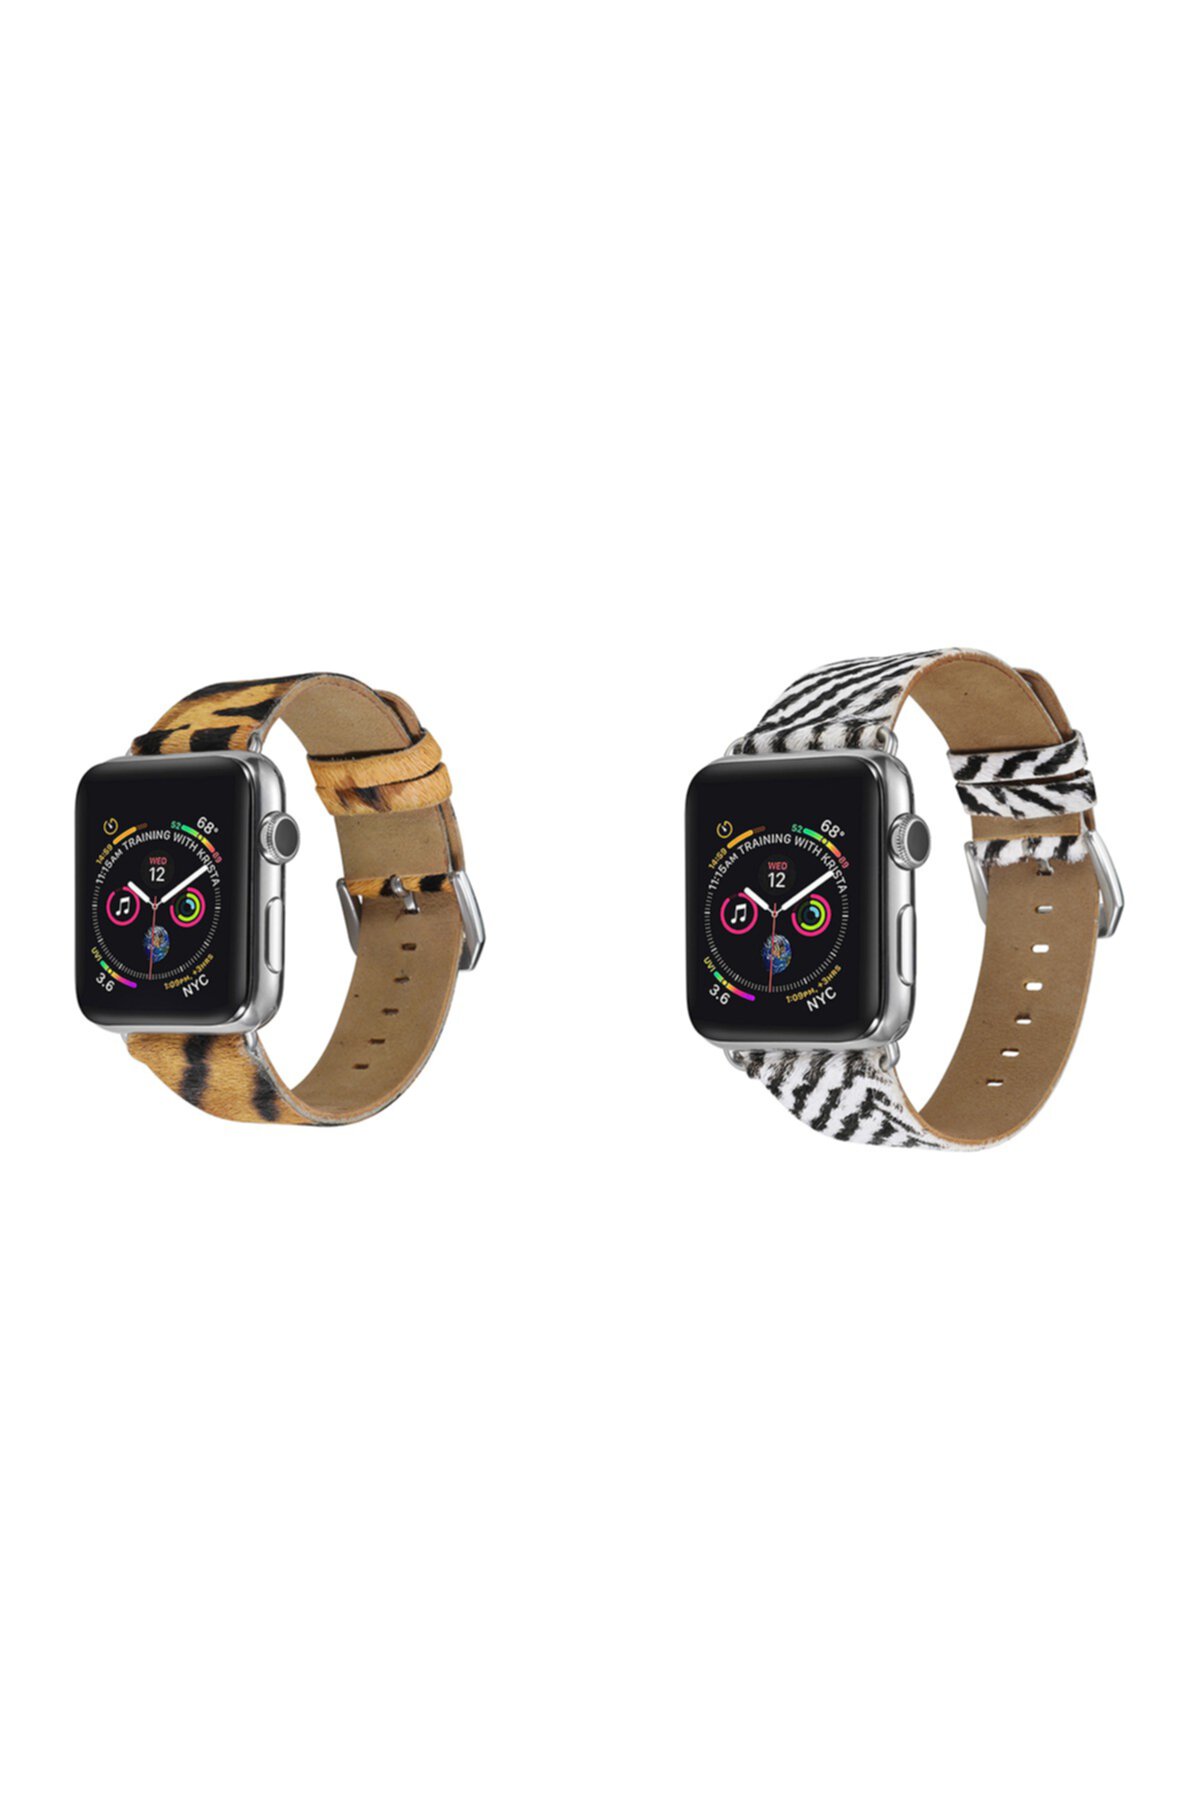 Кожаный ремешок с принтом нескольких животных для 42-мм / 44-мм Apple Watch Series 1, 2, 3, 4, 5 - Упаковка из 2 POSH TECH